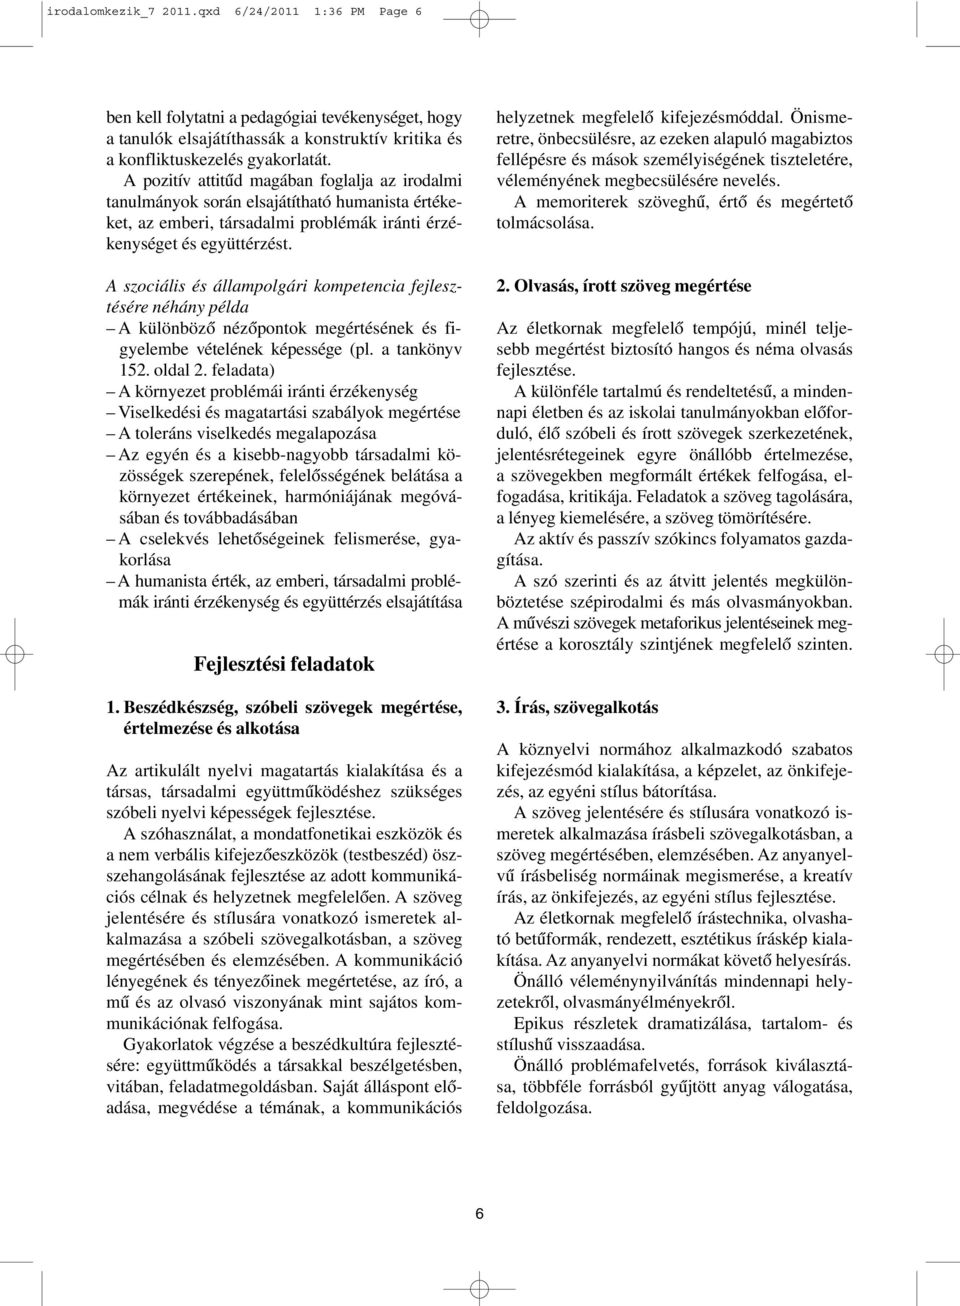 A szociális és állampolgári kompetencia fejlesztésére néhány példa A különbözõ nézõpontok megértésének és figyelembe vételének képessége (pl. a tankönyv 152. oldal 2.